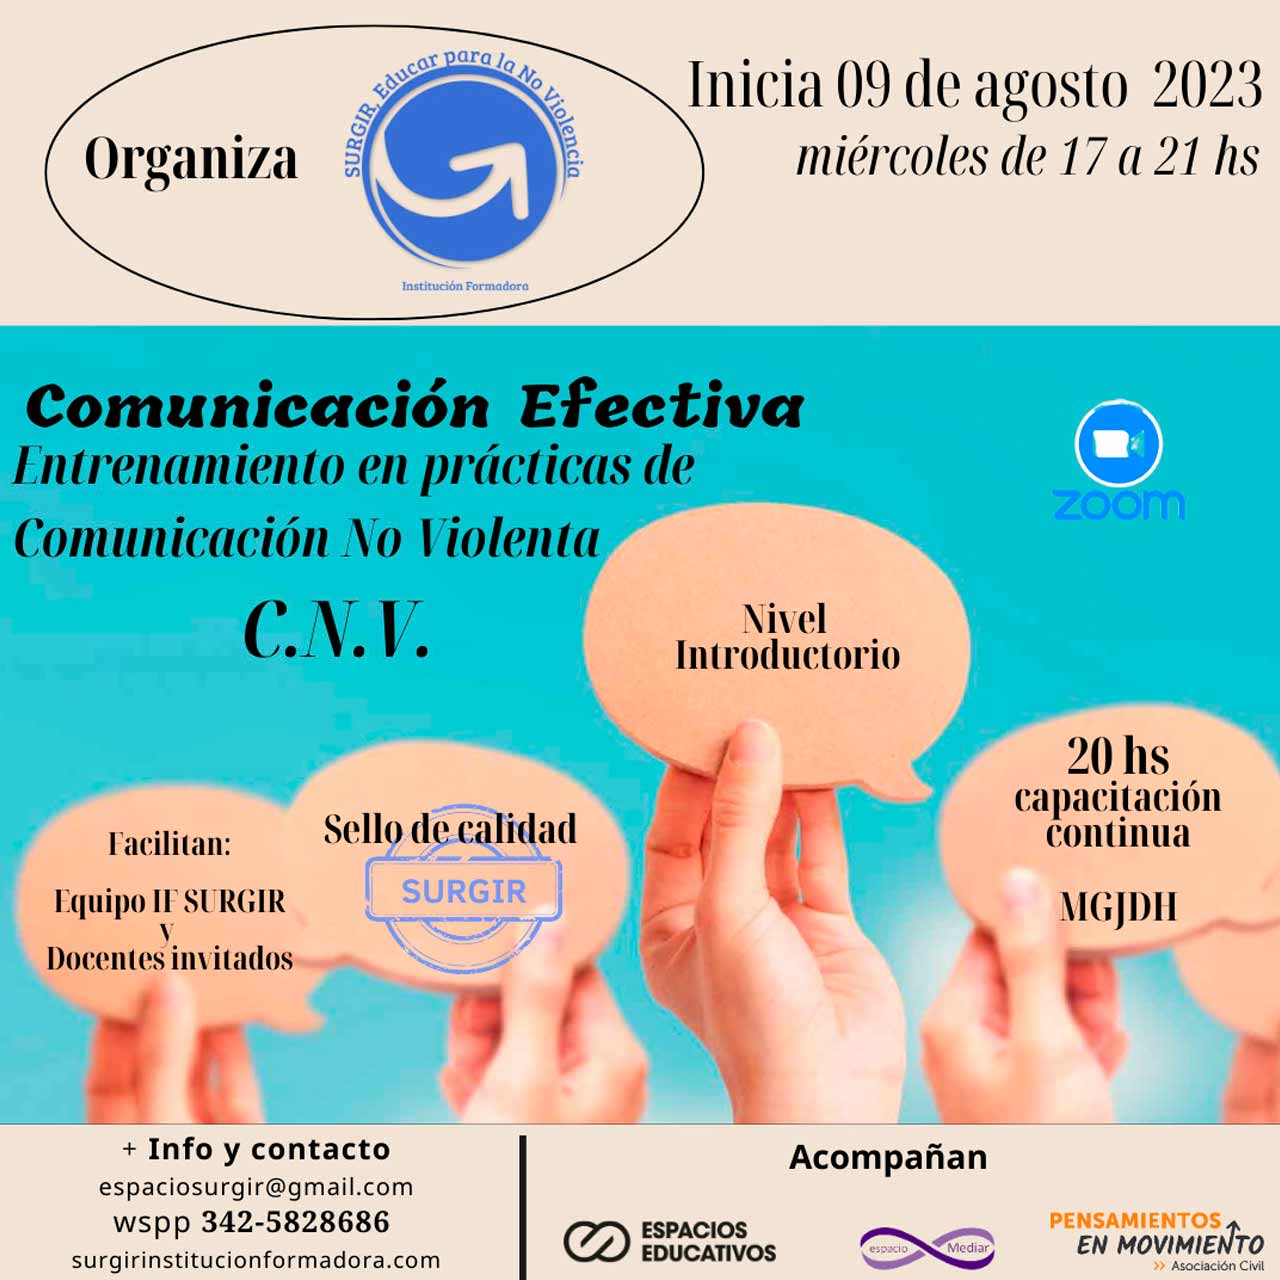 COMUNICACIÓN EFECTIVA. Entrenamiento en prácticas de Comunicación No Violenta (CNV)